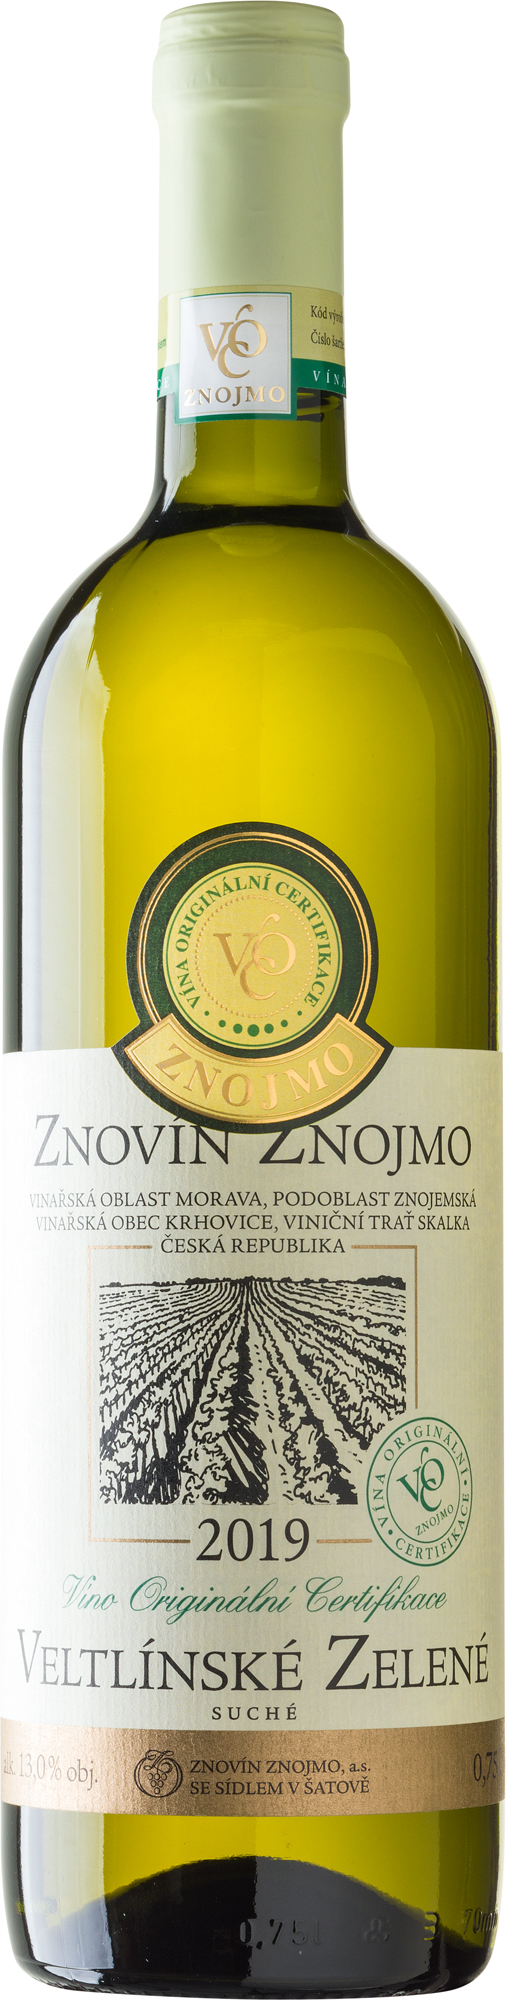 Veltlínské zelené 2019 - Víno originální certifikace VOC Znojmo, suché, obsah láhve 0,75 l